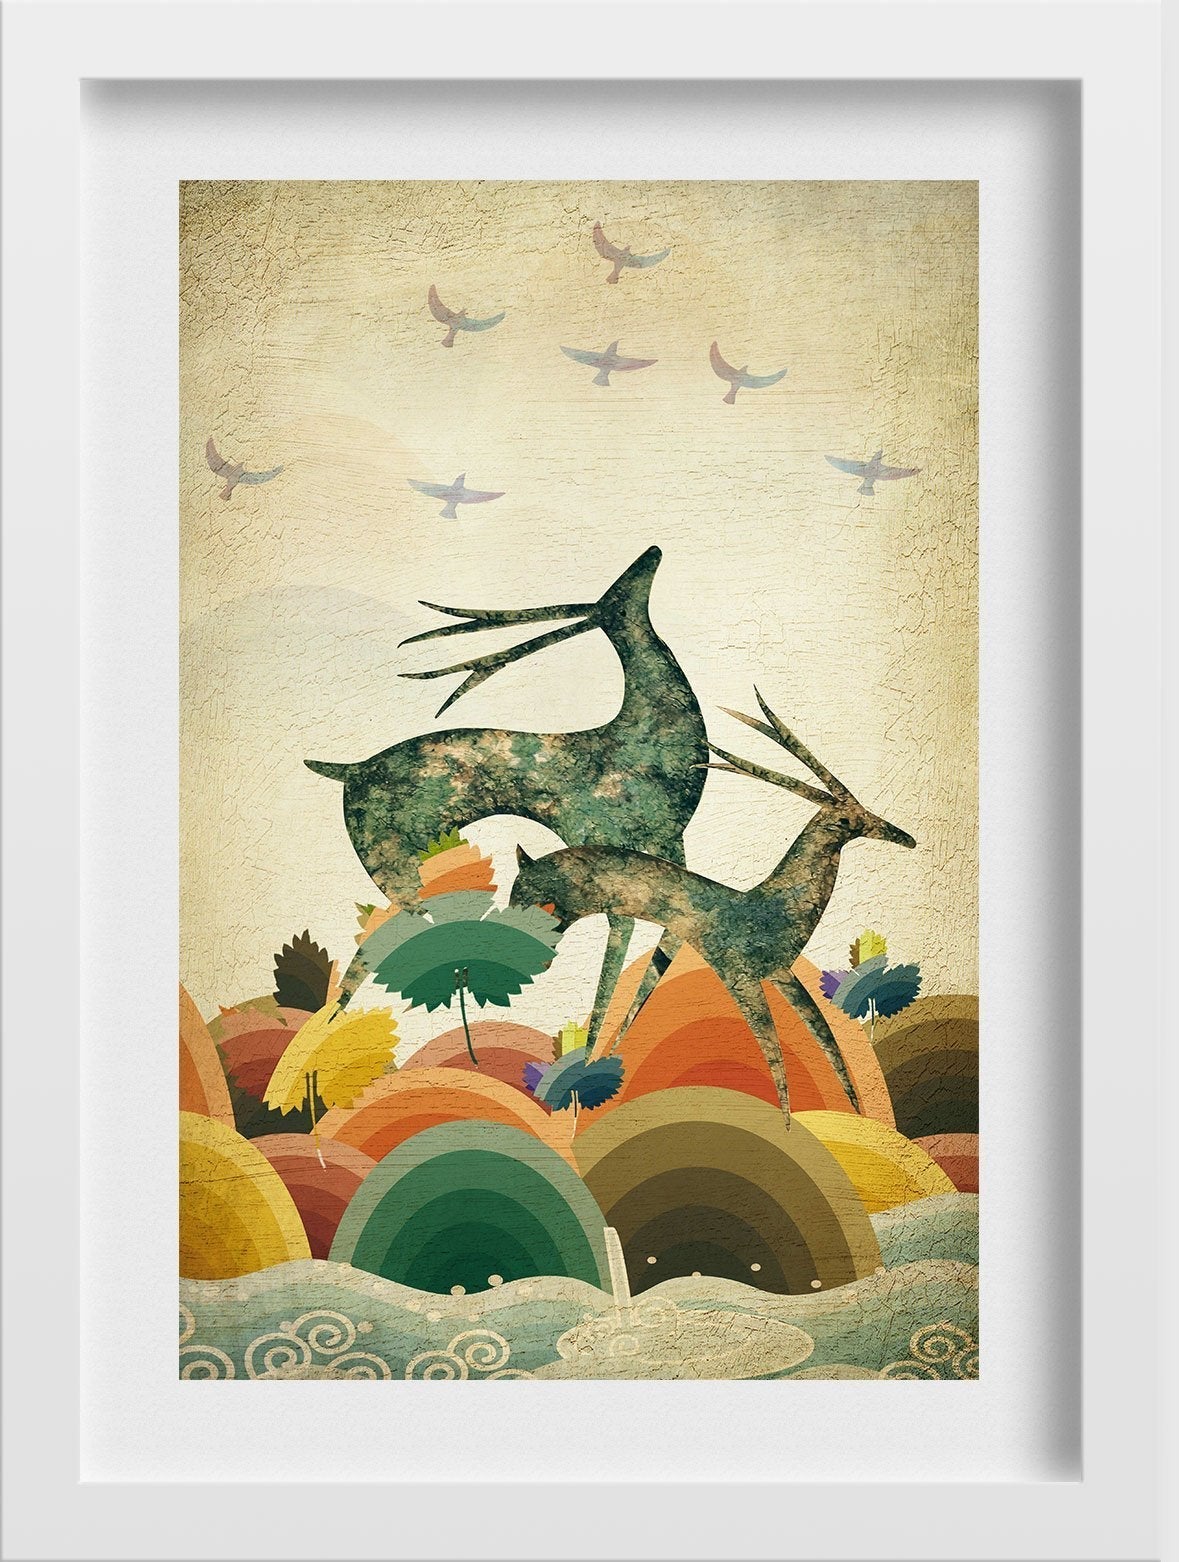 Jumping Deers Painting - Meri Deewar - MeriDeewar